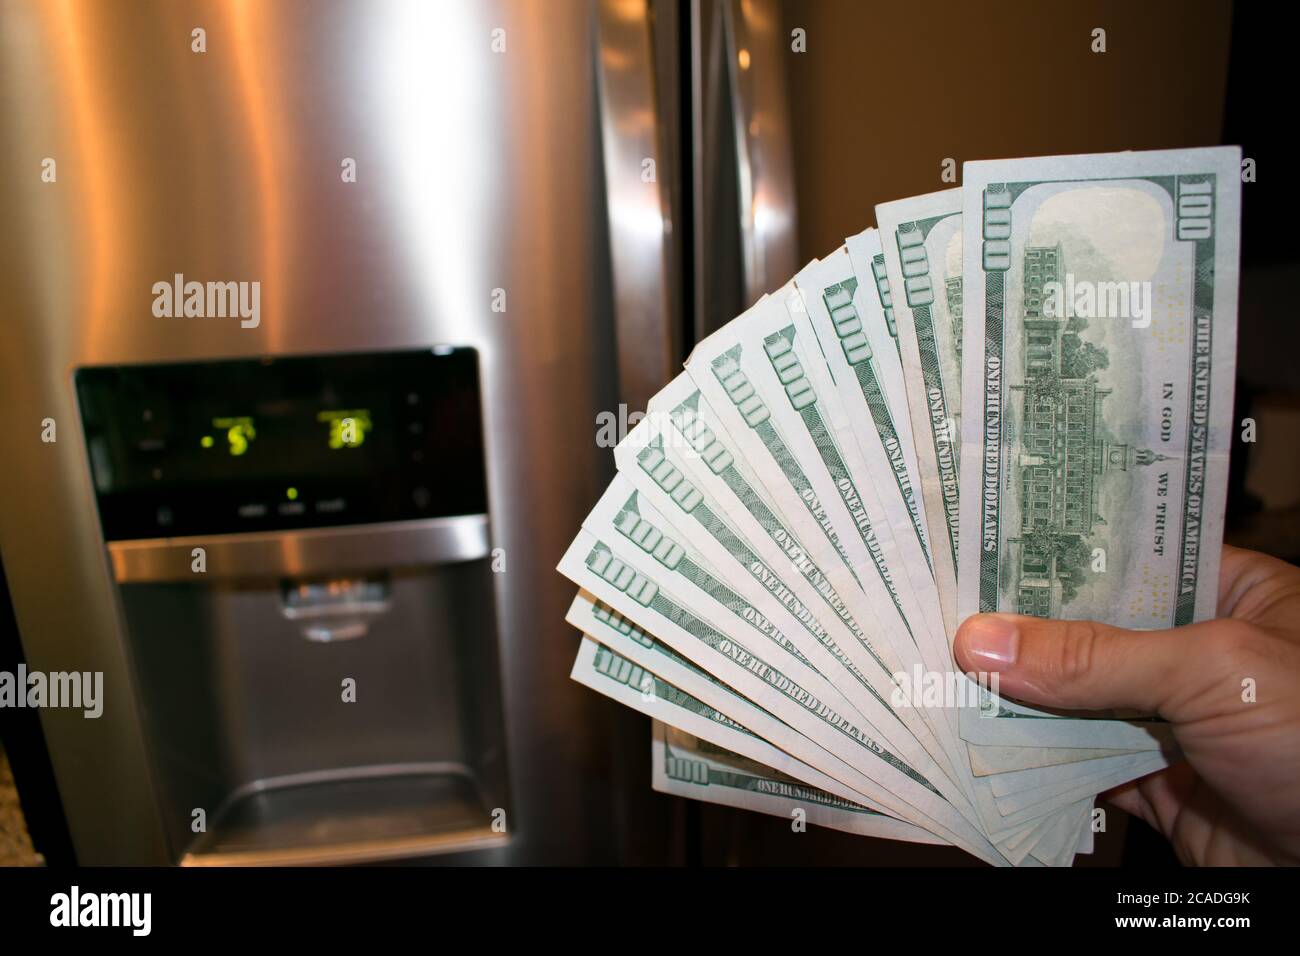 Fanned 100 dollar bills In front of a broken refrigerator Stock Photo